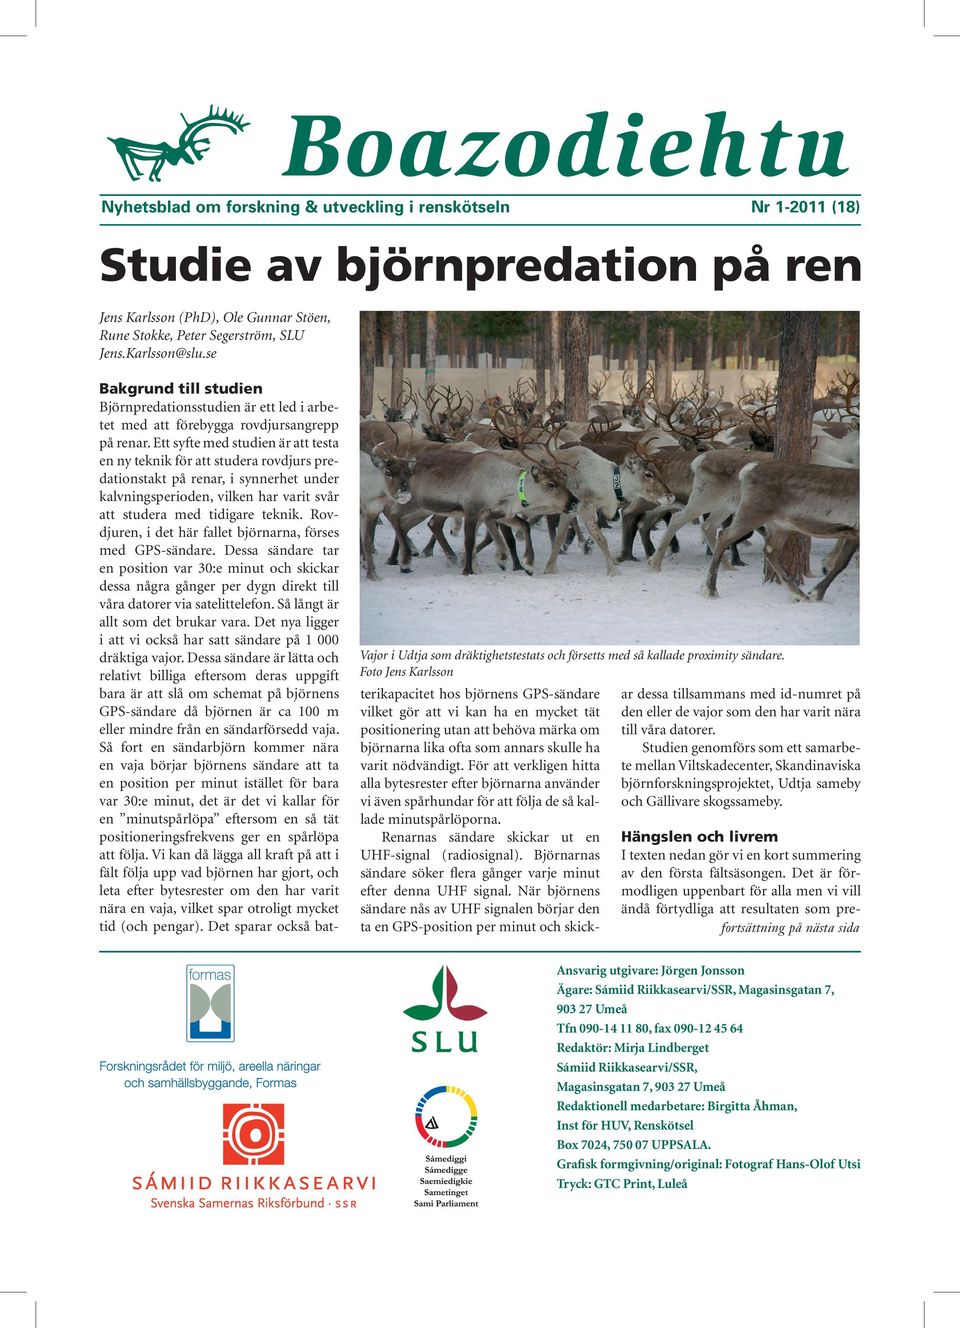 Foto Jens Karlsson Bakgrund till studien Björnpredationsstudien är ett led i arbetet med att förebygga rovdjursangrepp på renar.